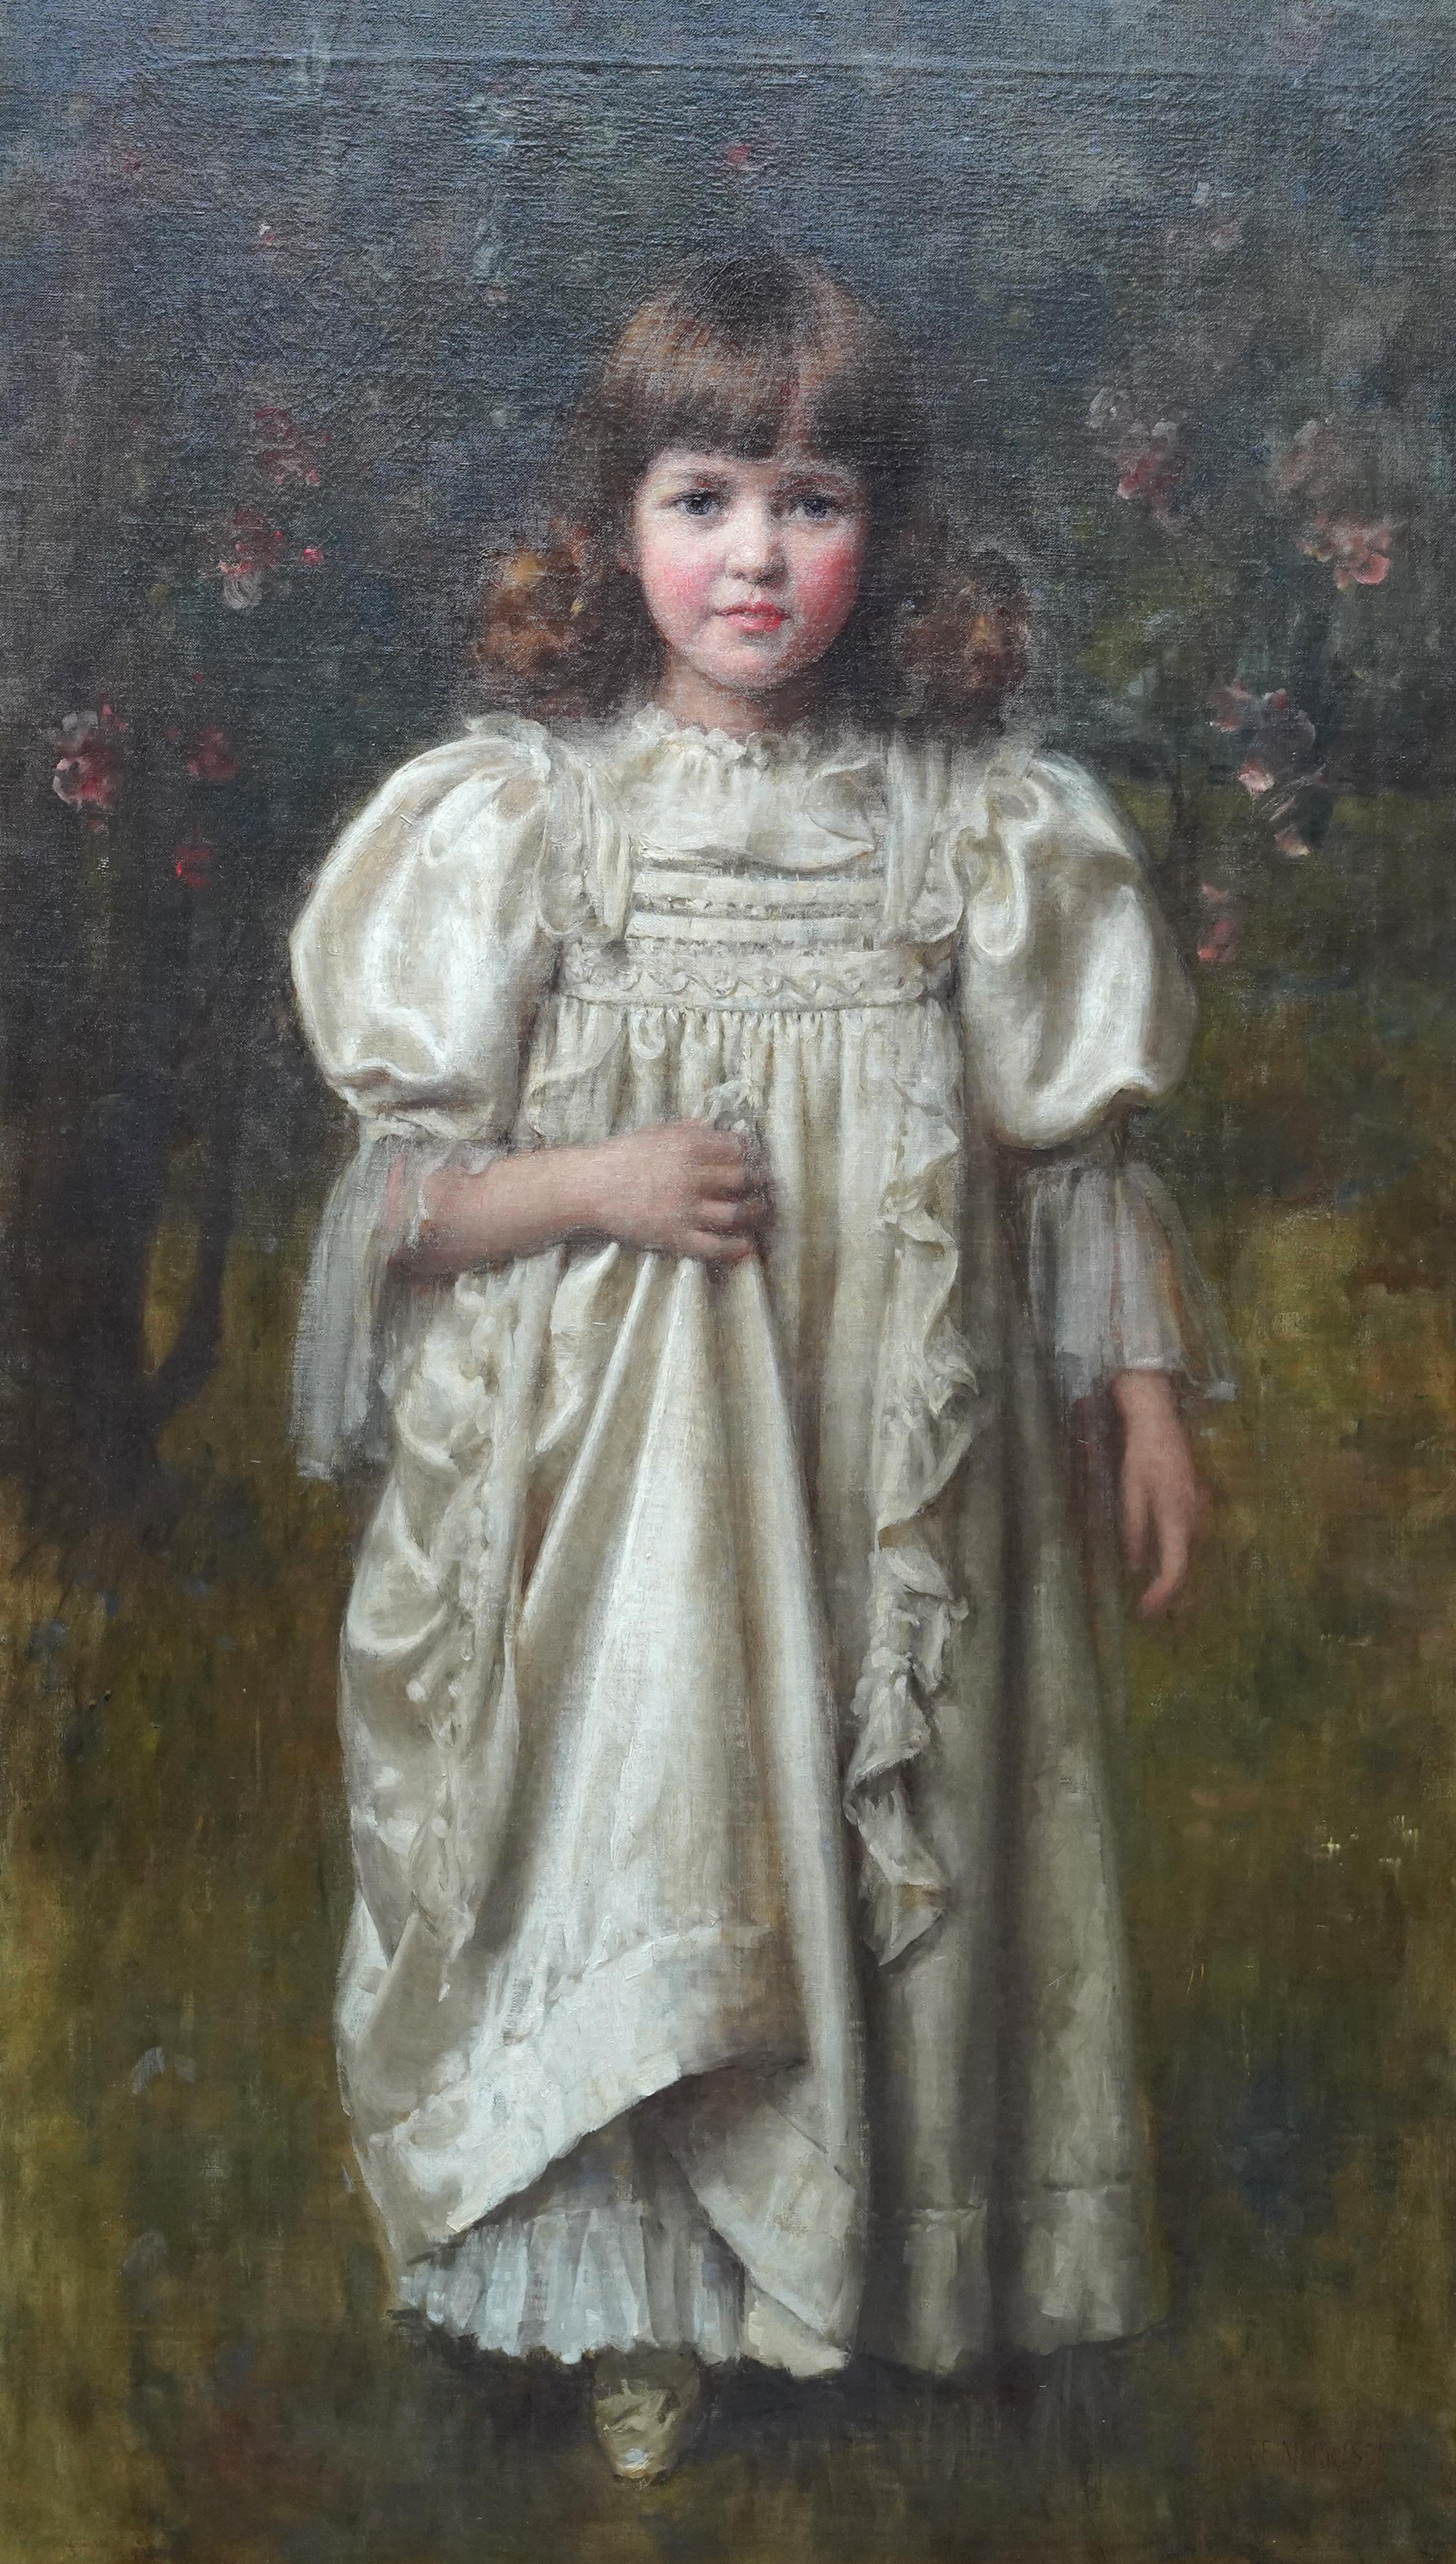 Porträt eines jungen Mädchens in einem weißen Kleid – britisches edwardianisches Ölgemälde – Painting von Robert Edward Morrison